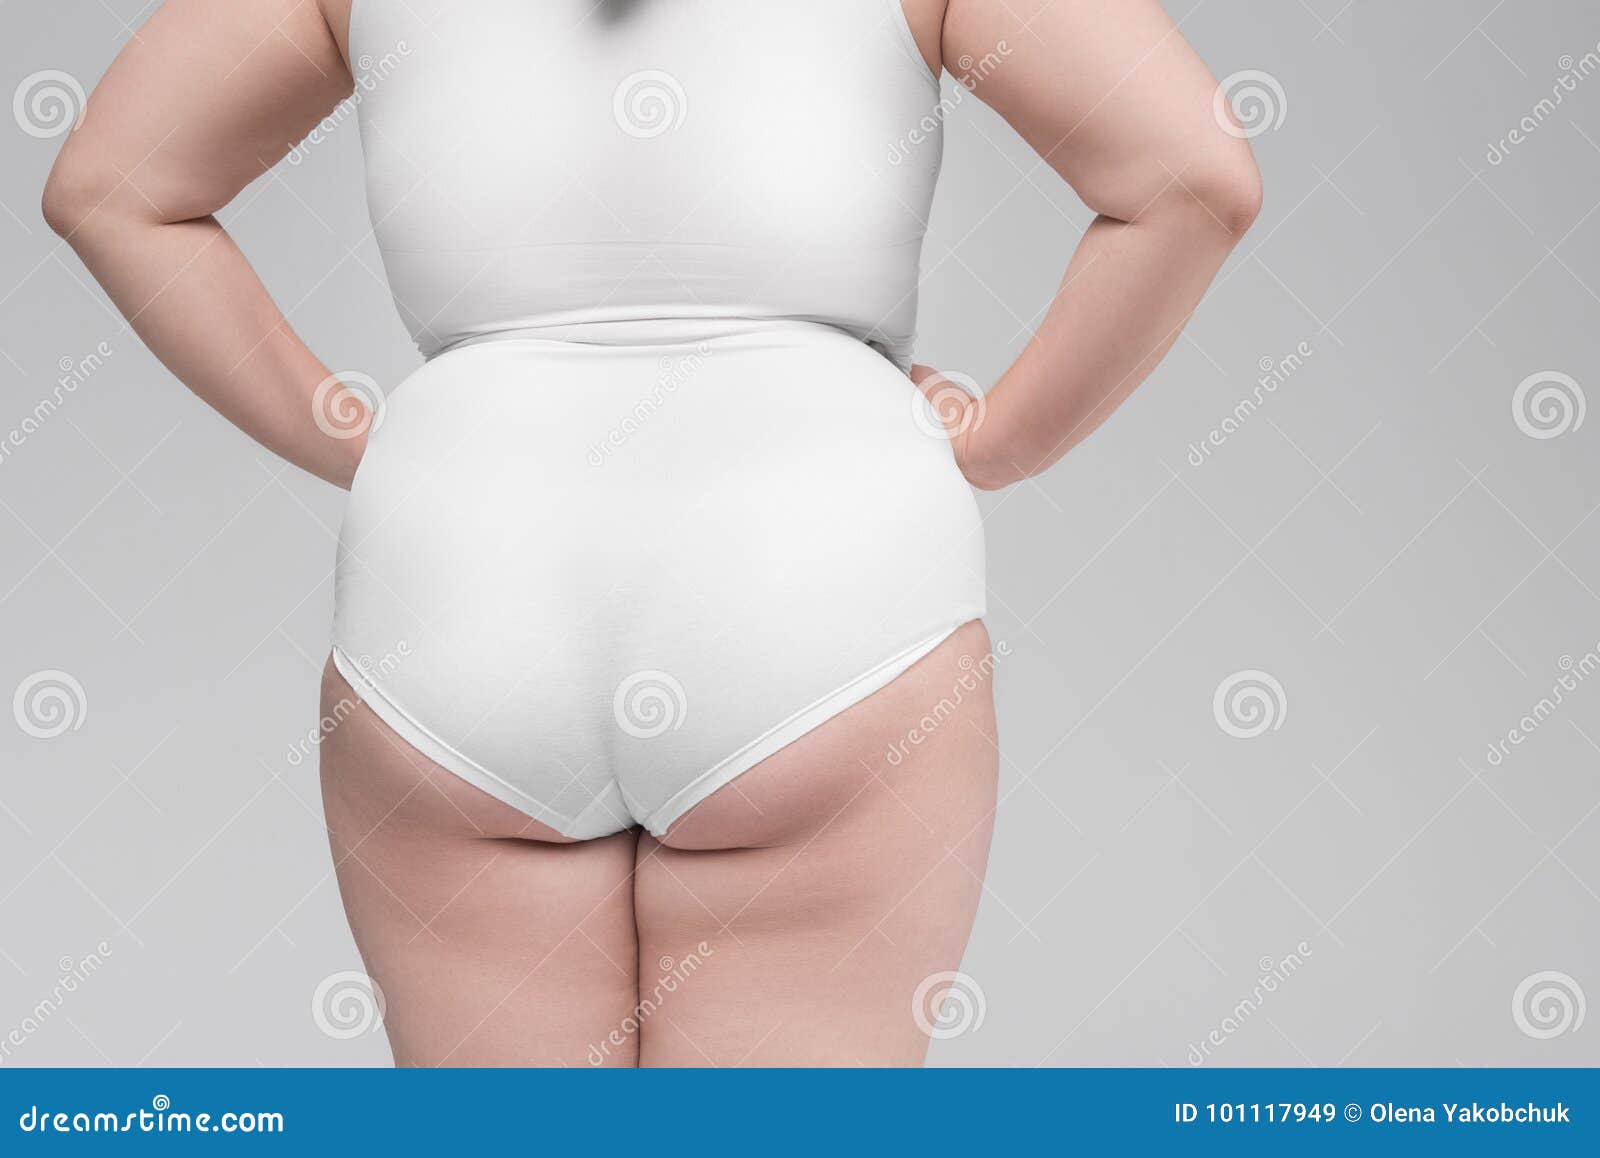 Ass white girls fat 35 Best